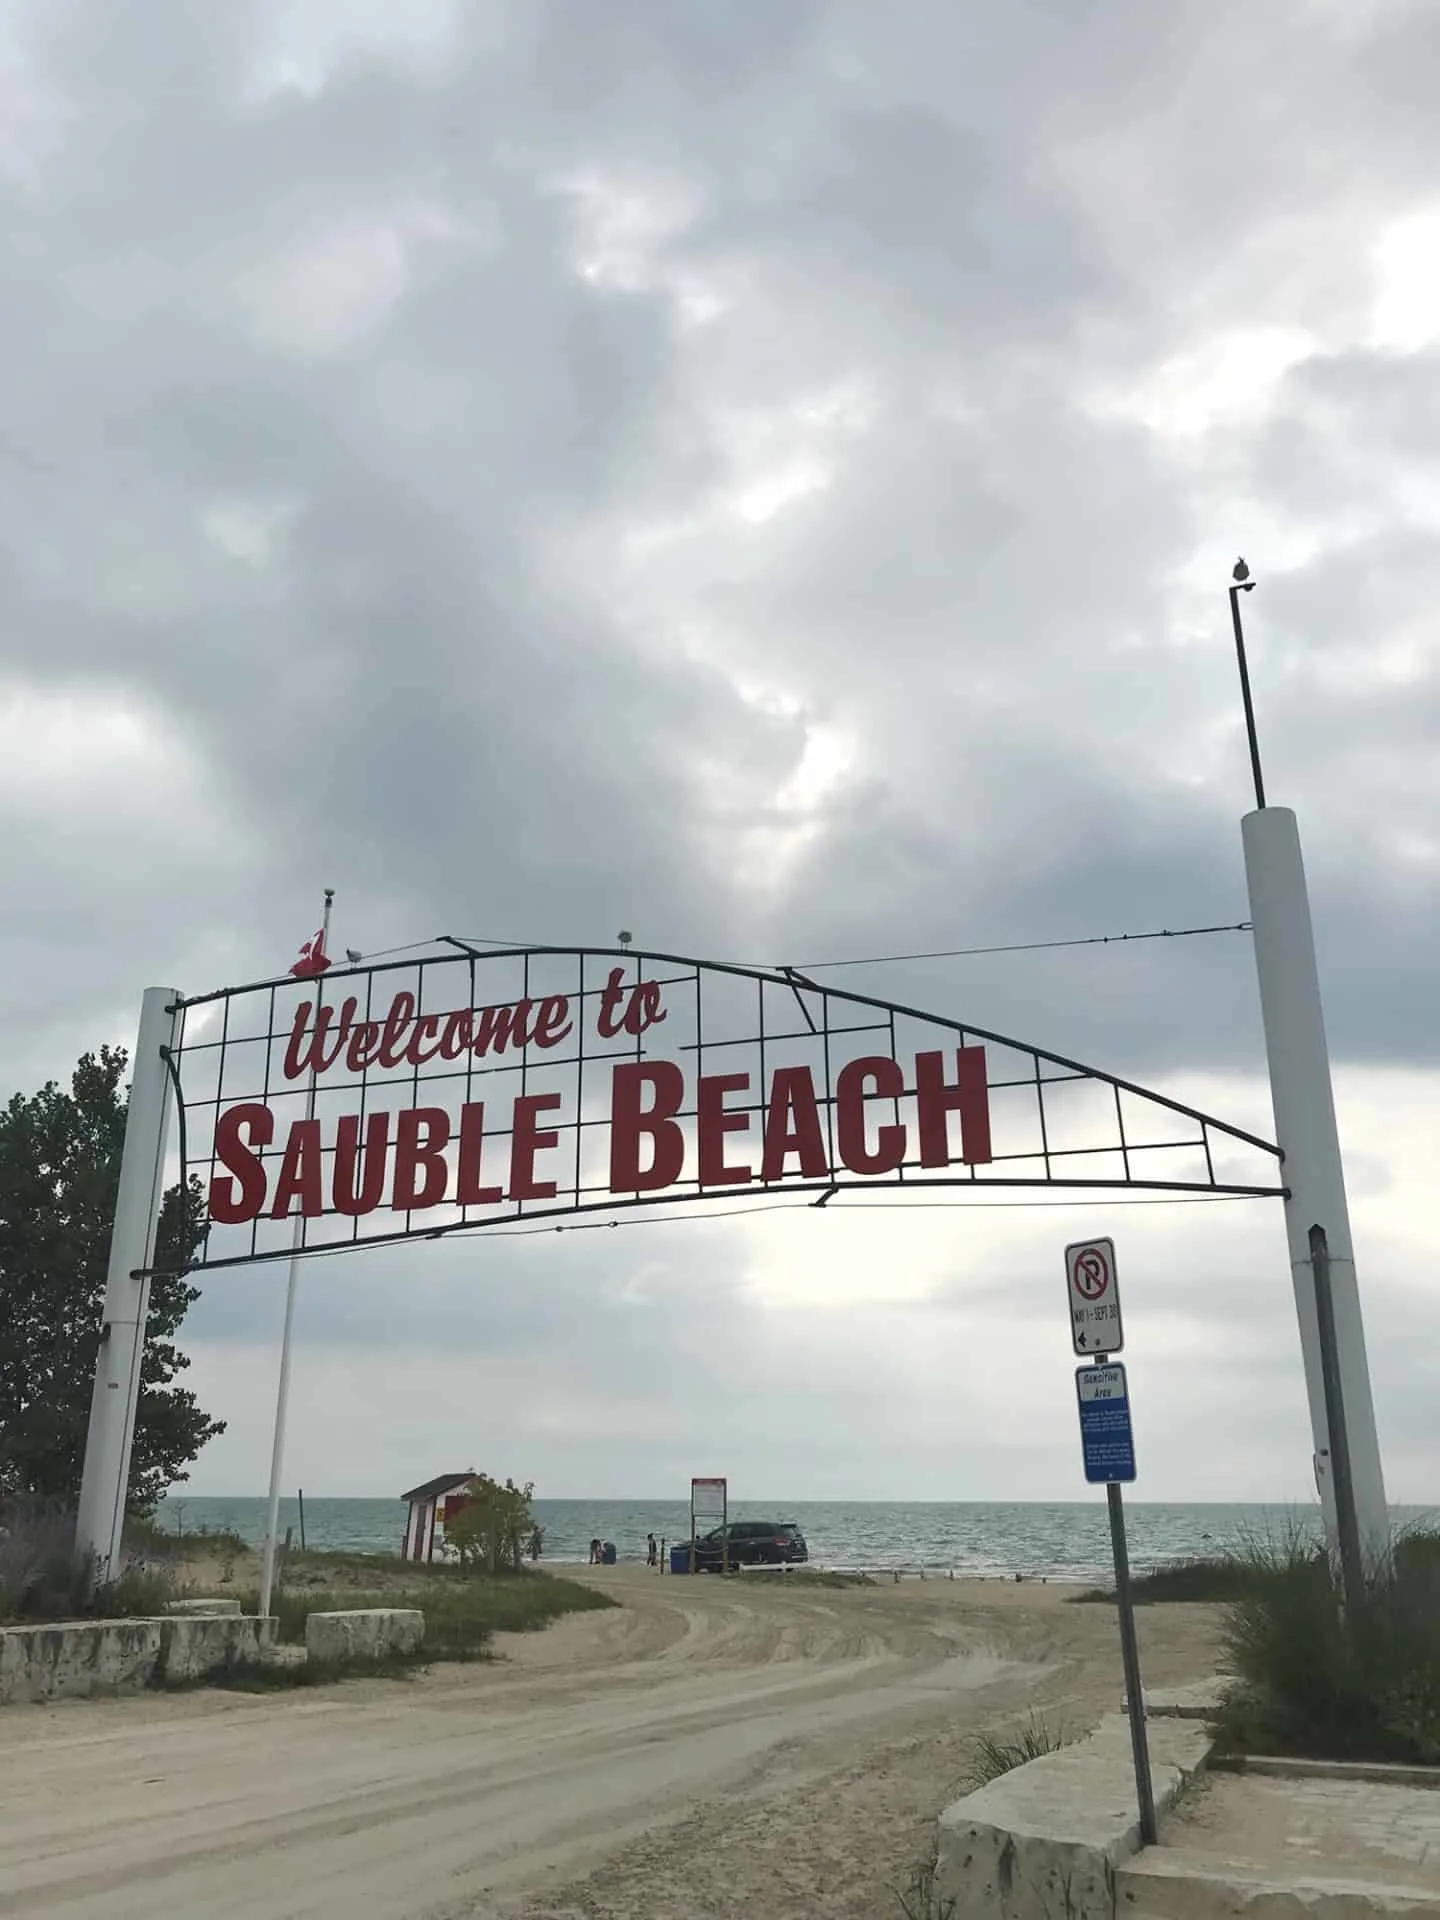 Sauble Beach, Ontario